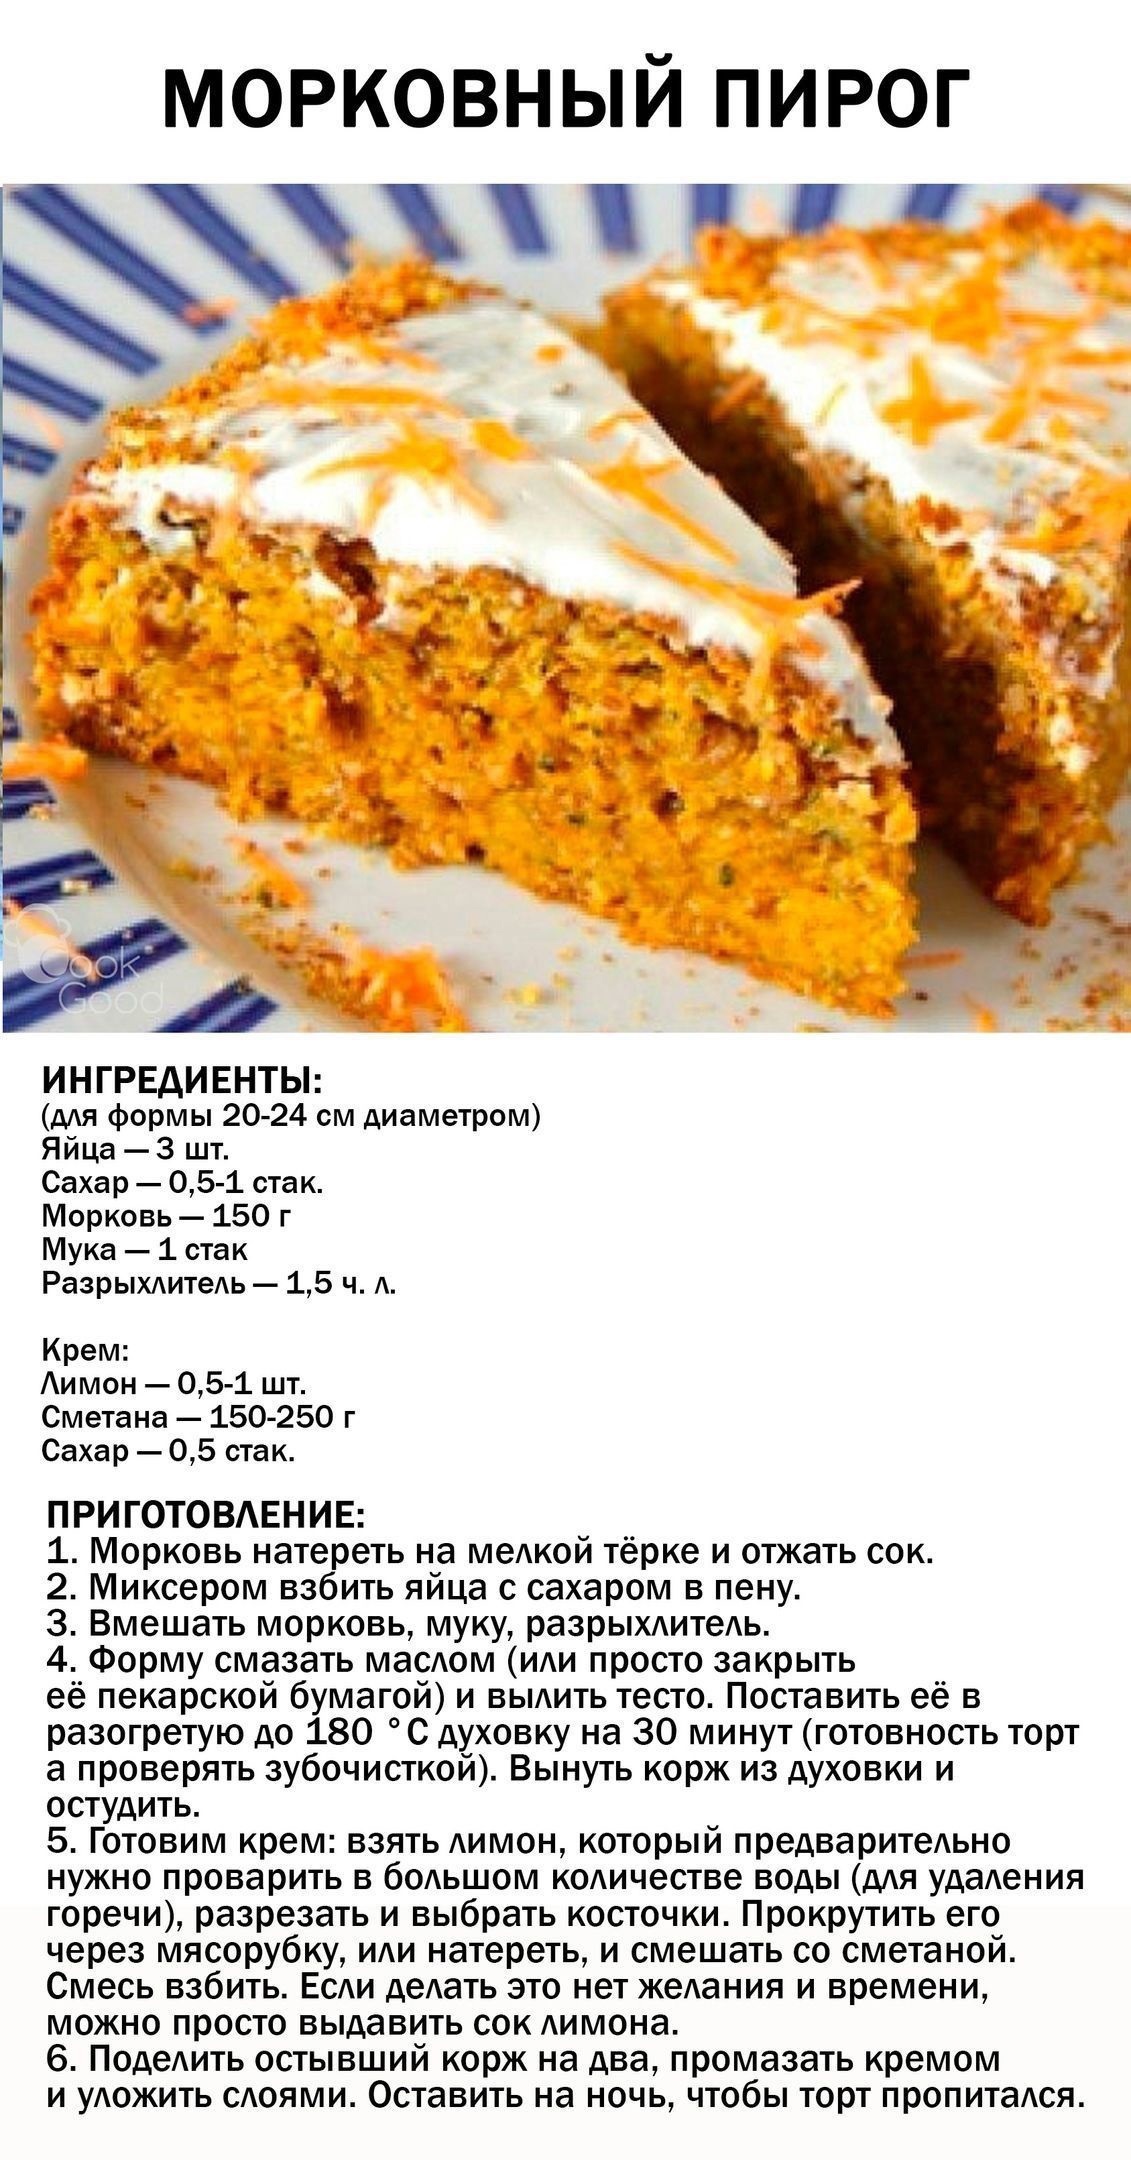 Рецепт пирога без масла. Рецепт морковного пирога. Морковный пирог в духовке. Морковный пирог рецепт. Морковный пирог рецепт в духовке.